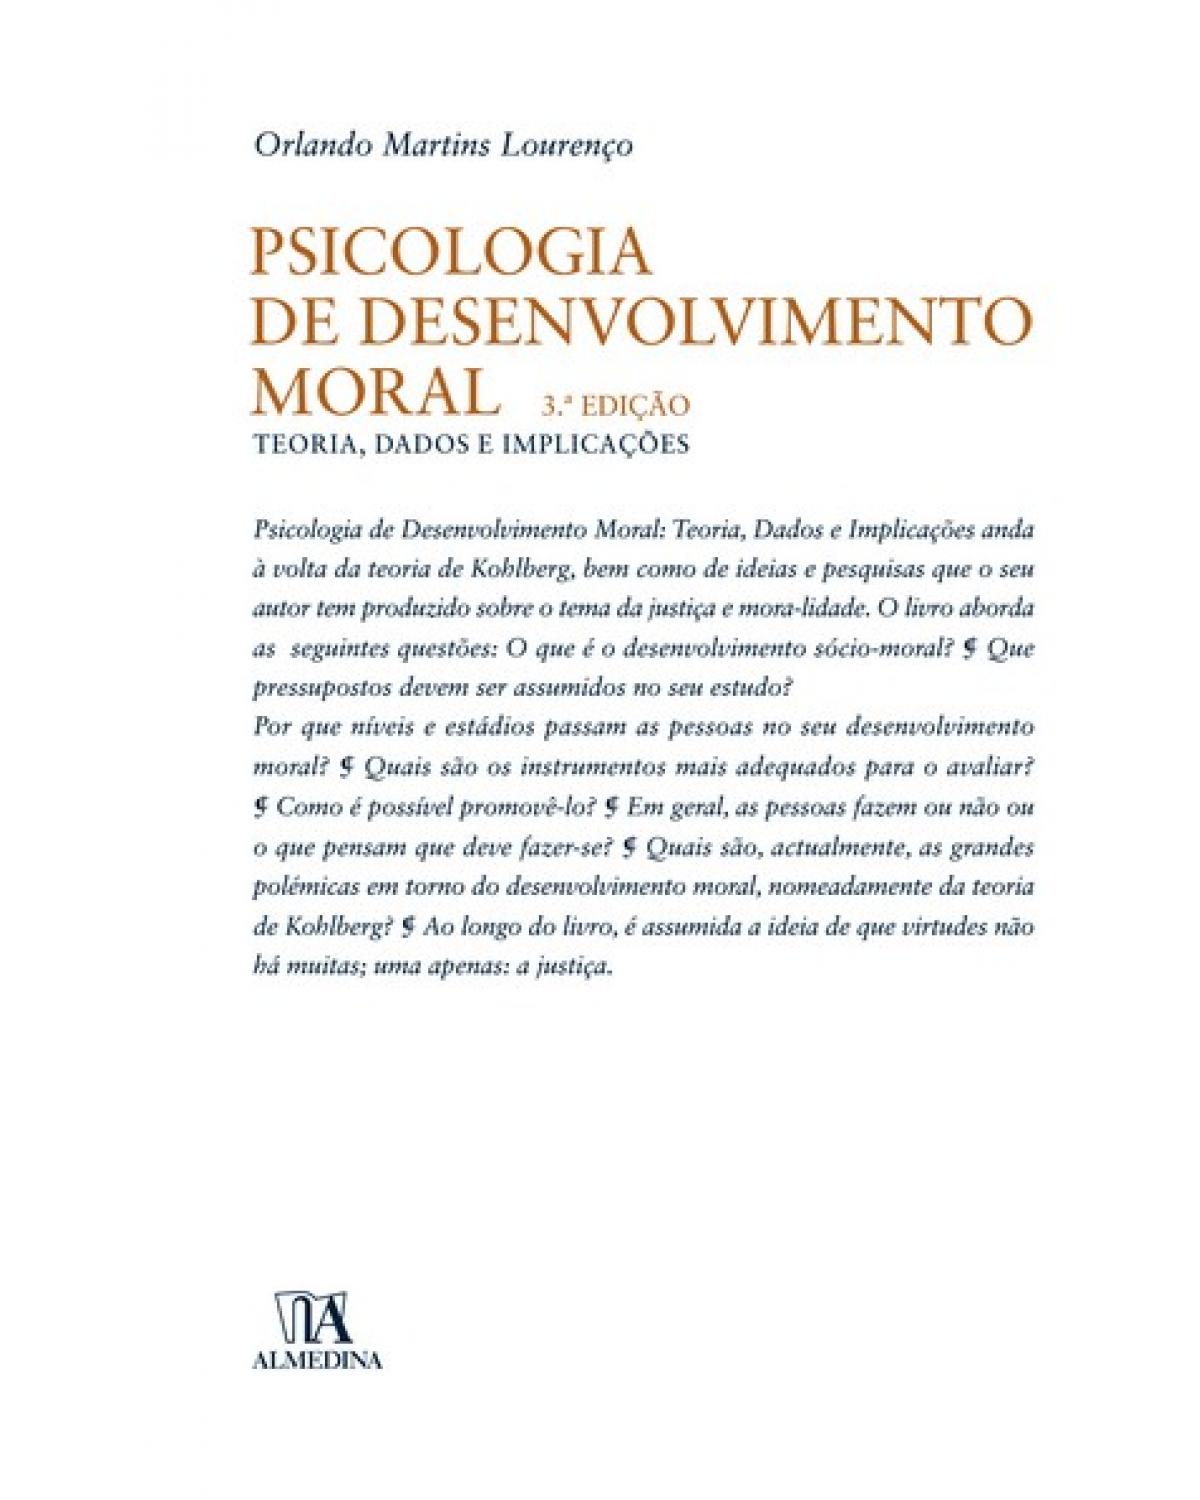 Psicologia de desenvolvimento moral - teoria, dados e implicações - 3ª Edição | 2006